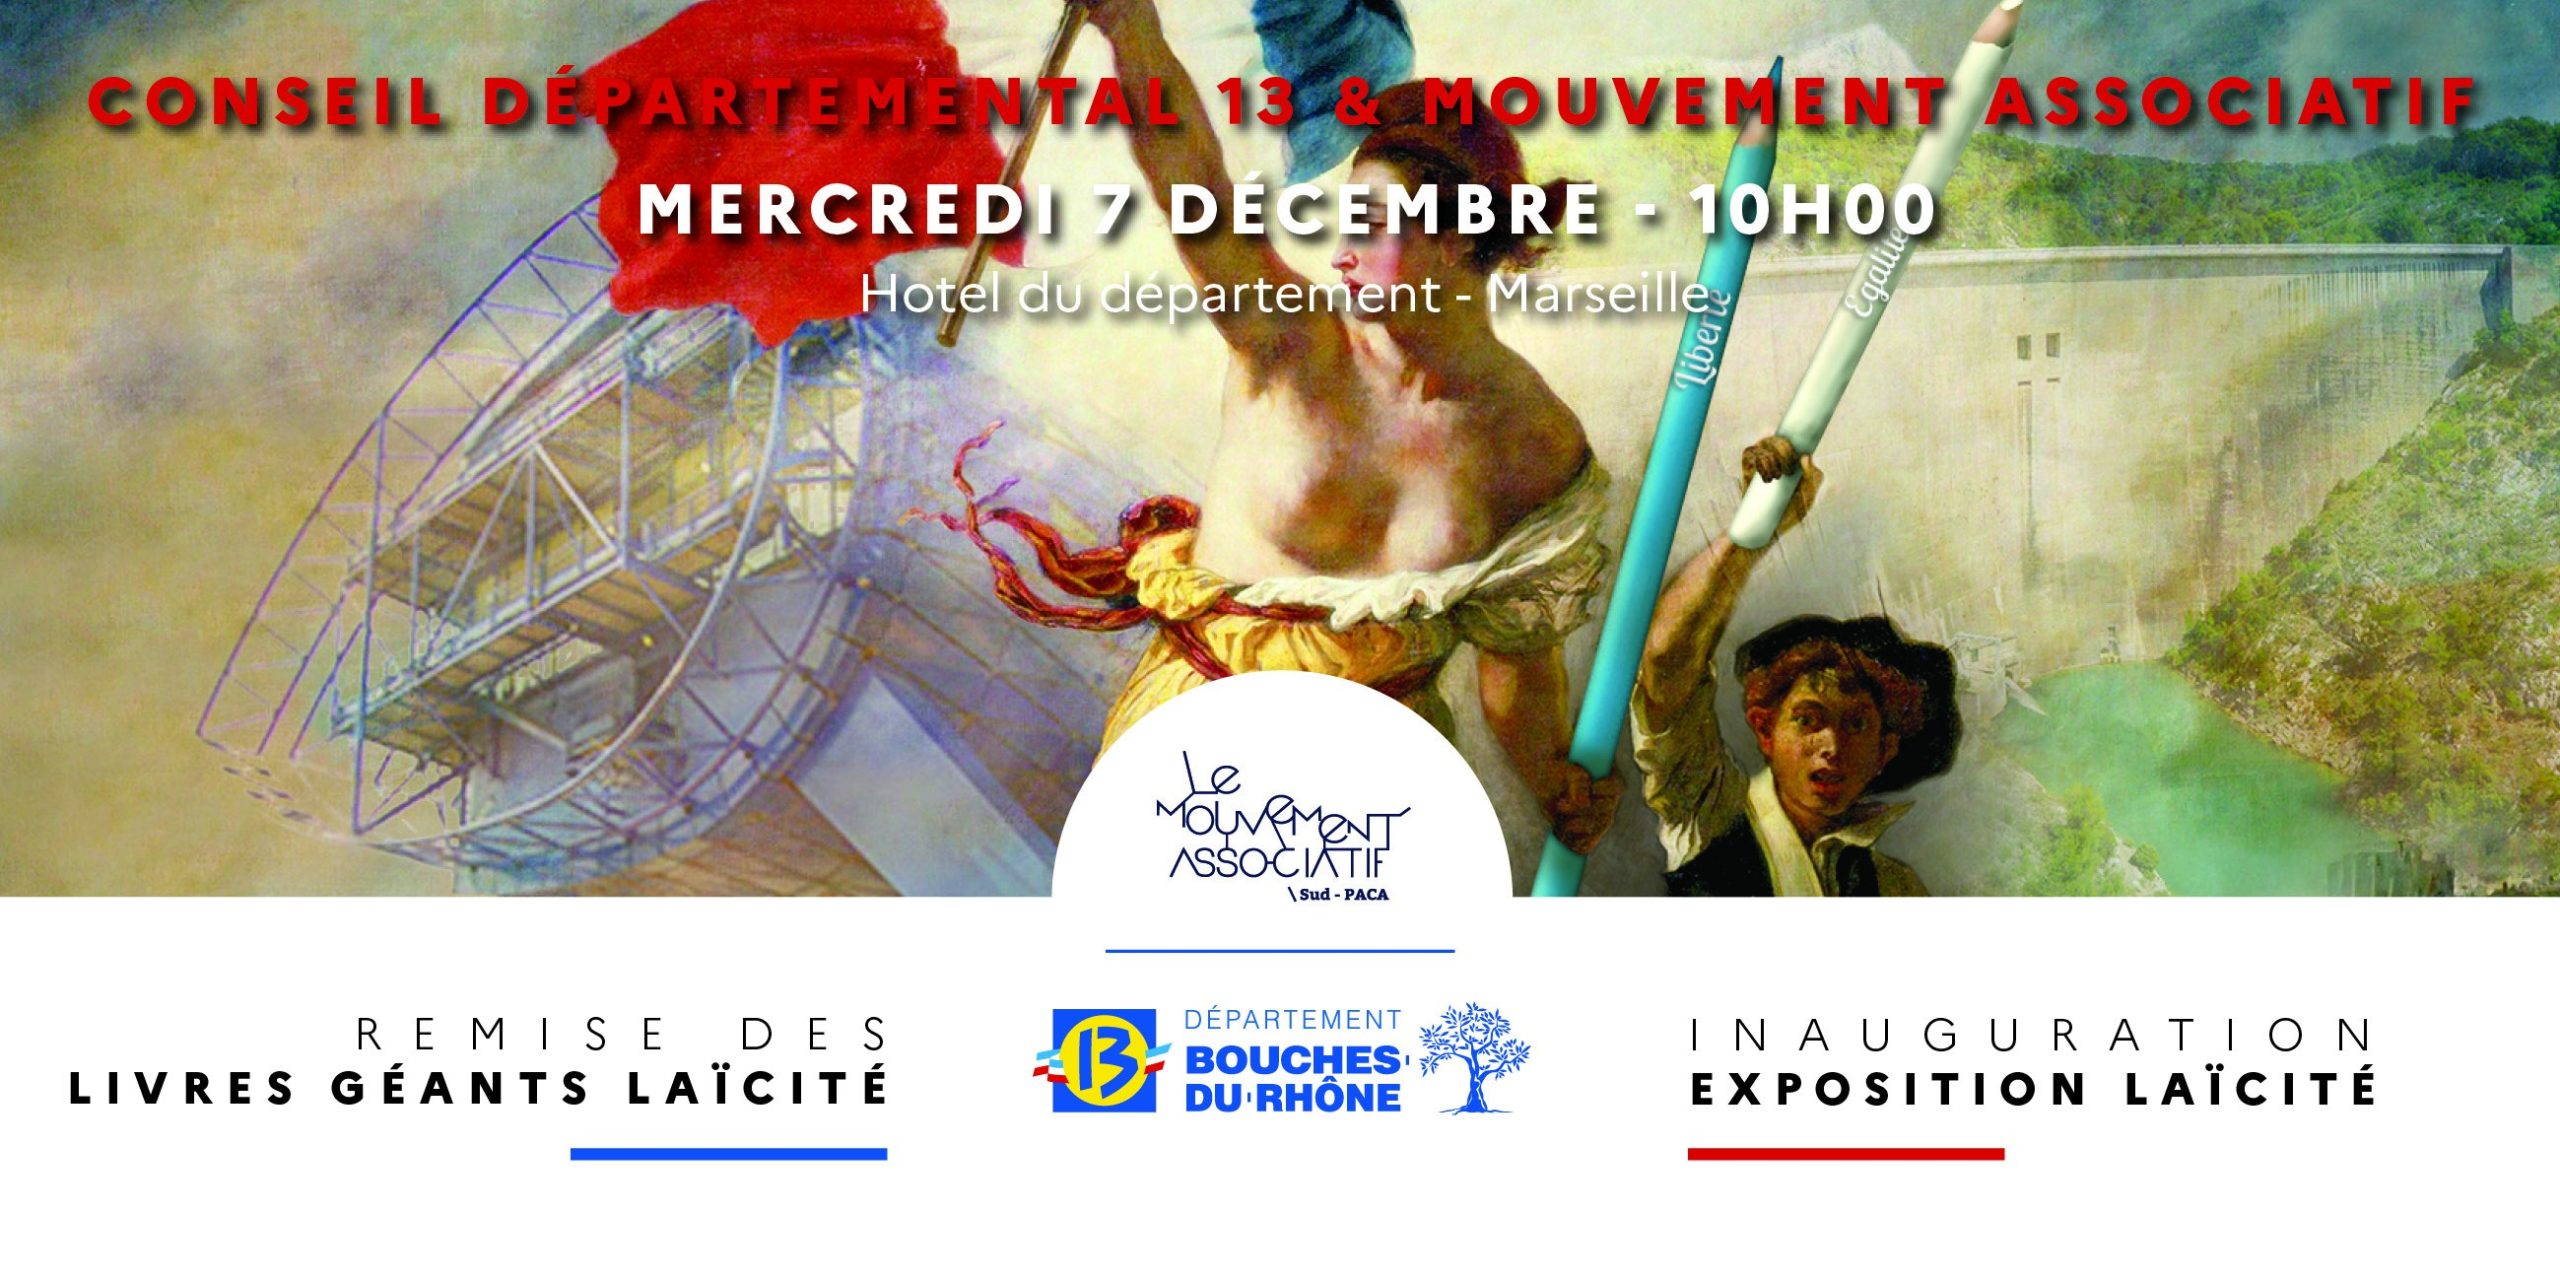 [Semaine de la Laïcité] Le Mouvement Associatif Région Sud Provence Alpes Côte d’Azur organise une remise de livres aux associations